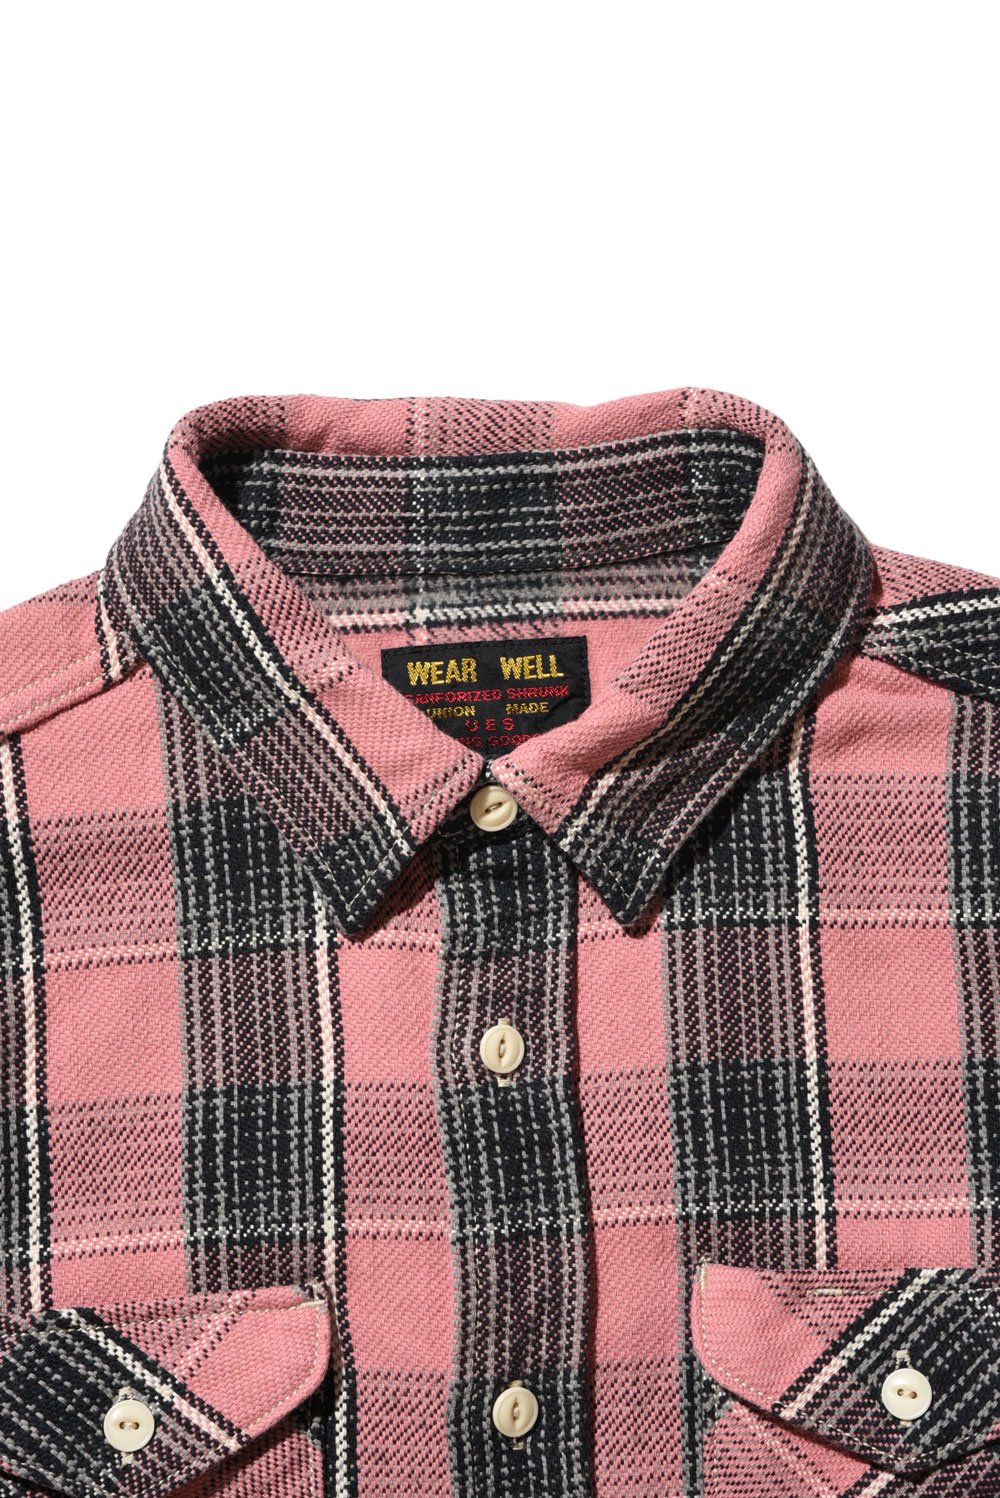 UES(ウエス) ヘビーネルシャツ 501952 通販正規取扱 | ハーレムストア公式通販サイト